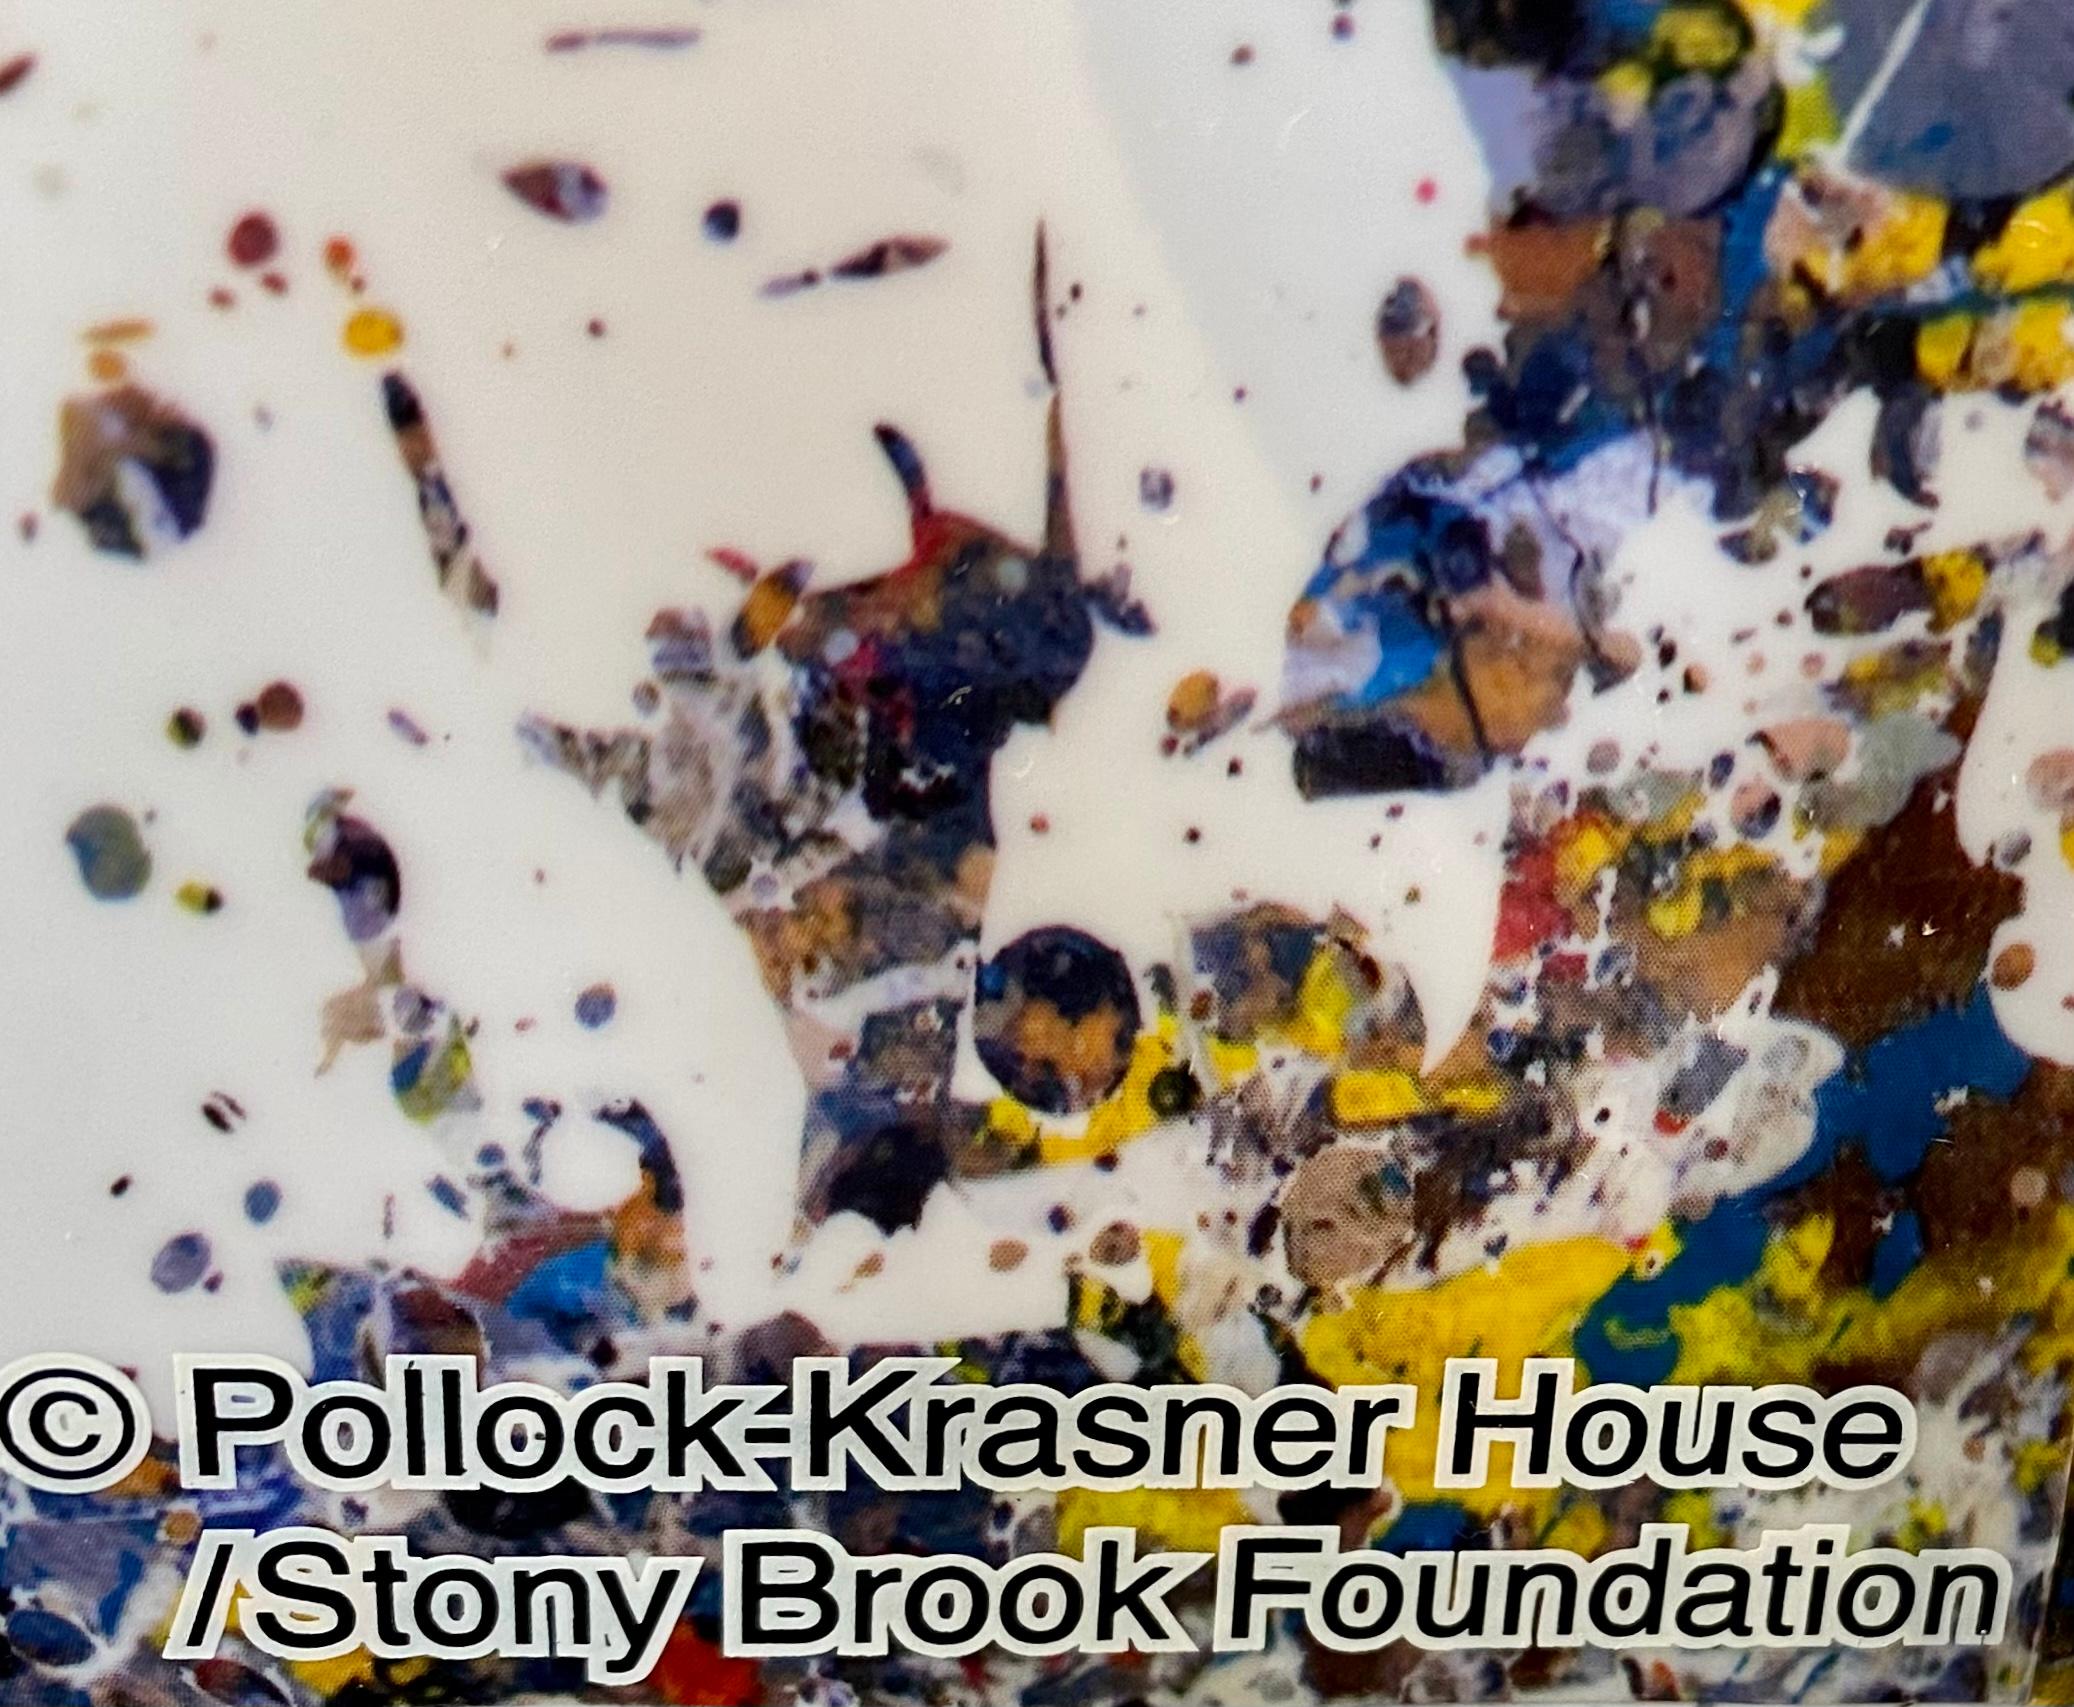 Jackson Pollock 1000% Bearbrick Figurative Skulptur: 
Eine schöne Größe (27 Zoll Höhe), sehr Sammlerstück Bearbrick Jackson Pollock Statue, von Kopf bis Fuß in Pollocks Signatur Kunst gespritzt; enthält eine Nachbildung des Künstlers Unterschrift